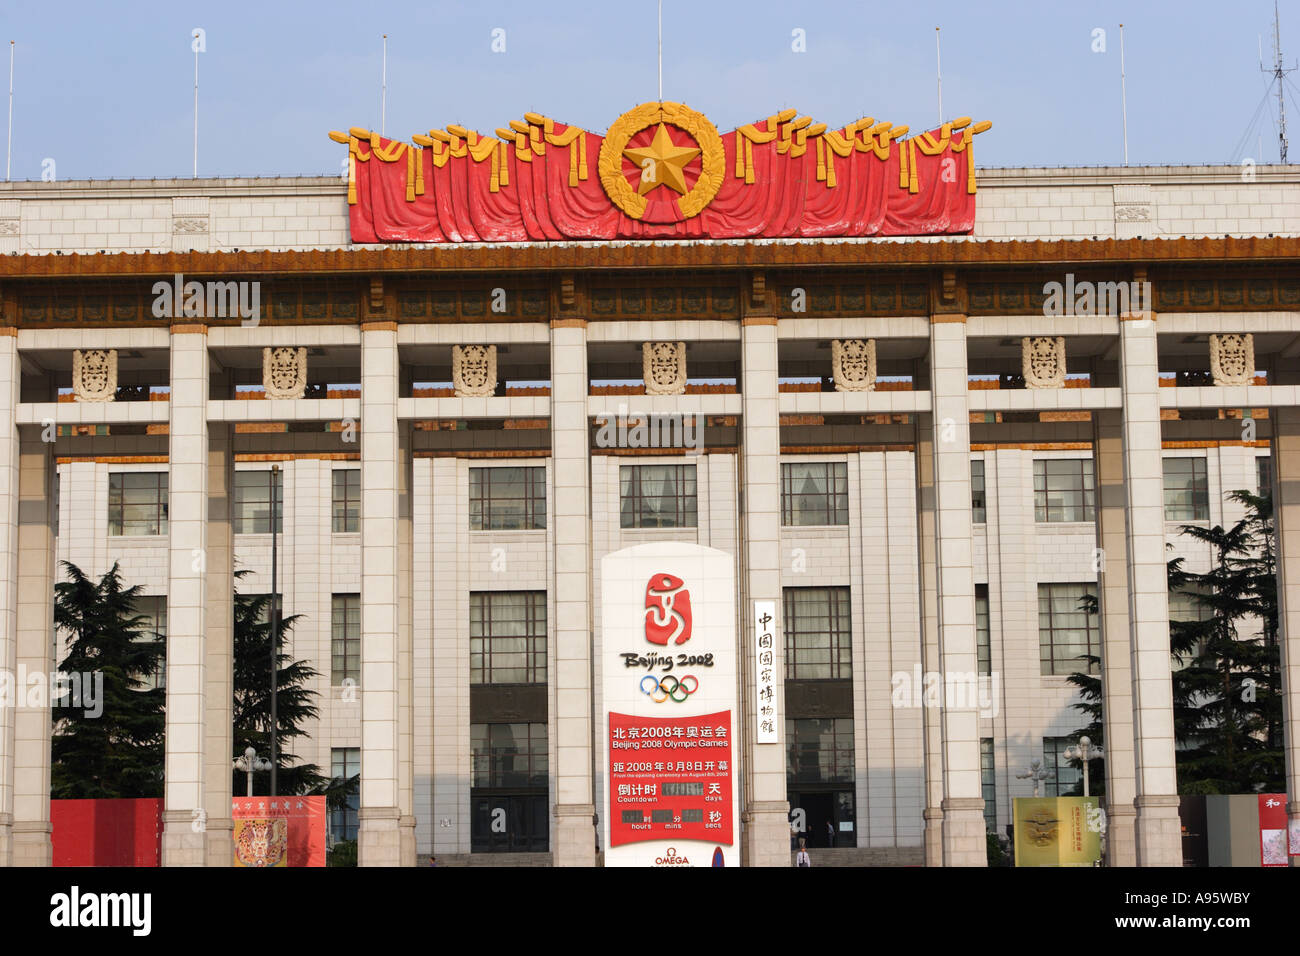 Reloj de cuenta atrás para las ceremonias de apertura de los Juegos Olímpicos de Verano de 2008 el Museo de la historia de China la plaza de Tiananmen Beijing Foto de stock